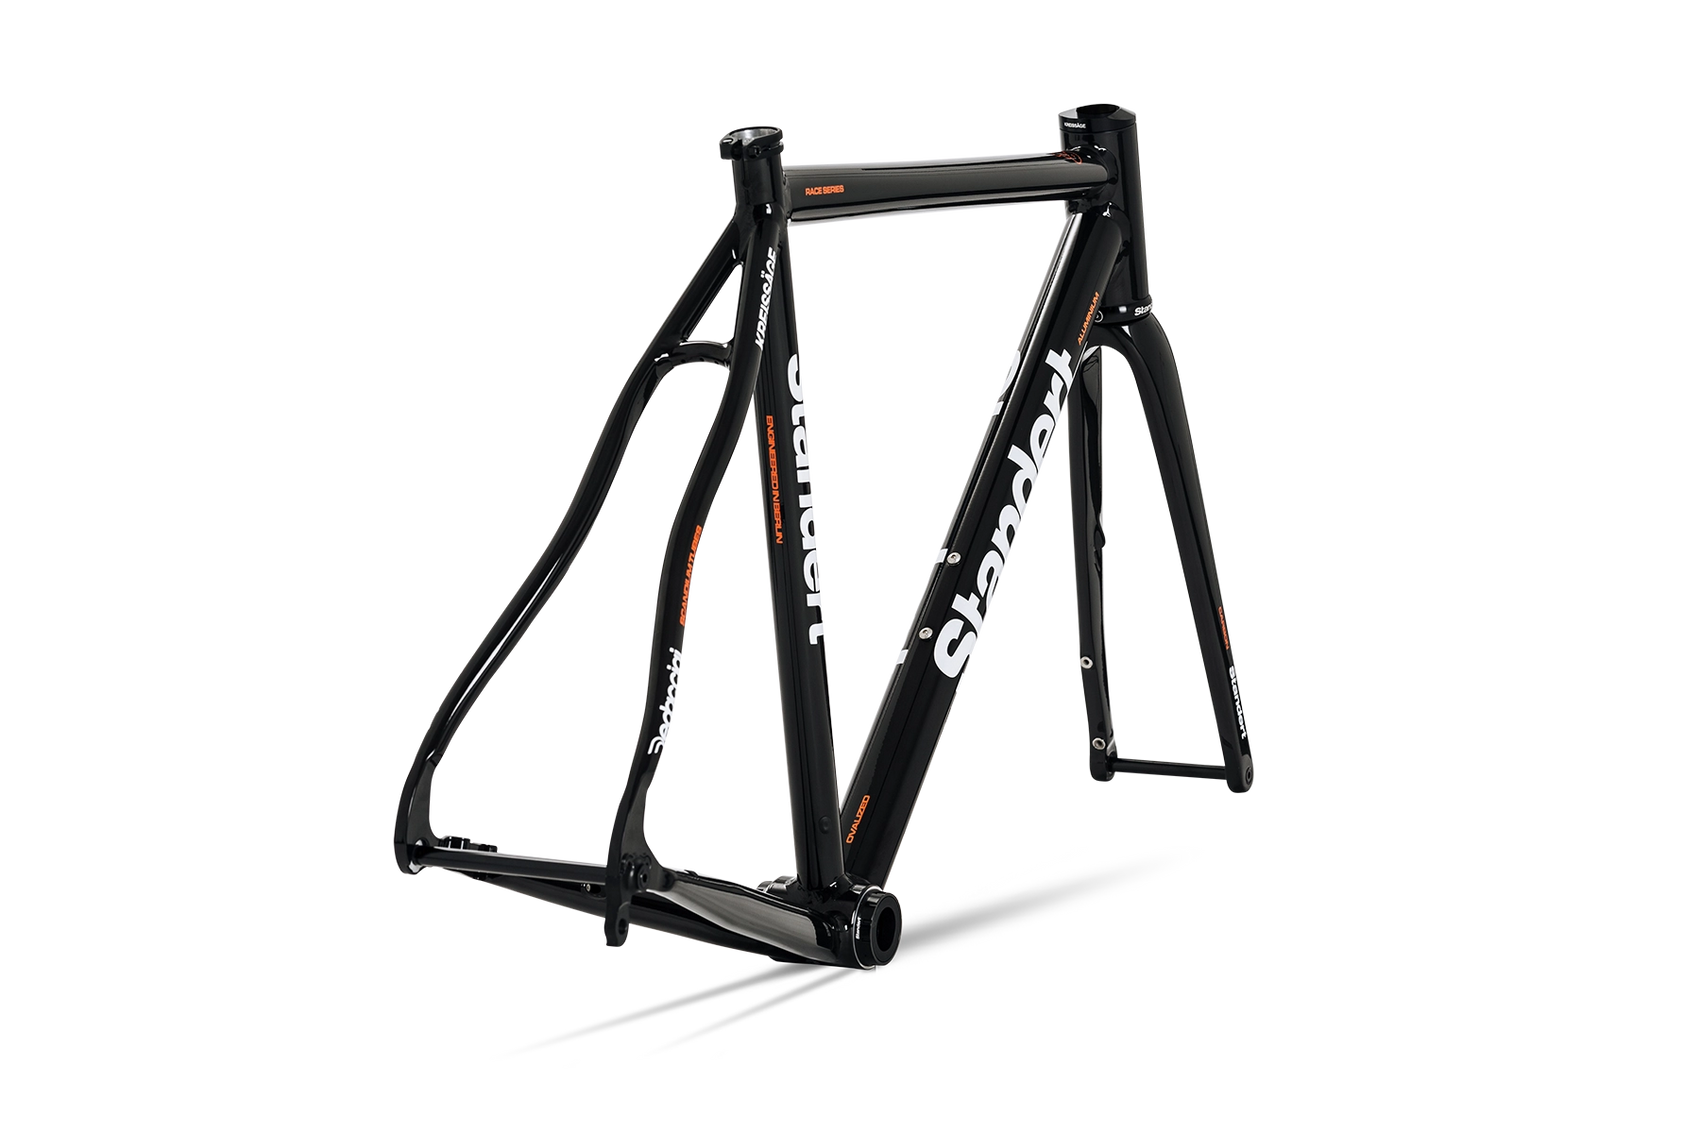 Kreissäge RS Black - Aluminum Road Bike Frame Made for Racing